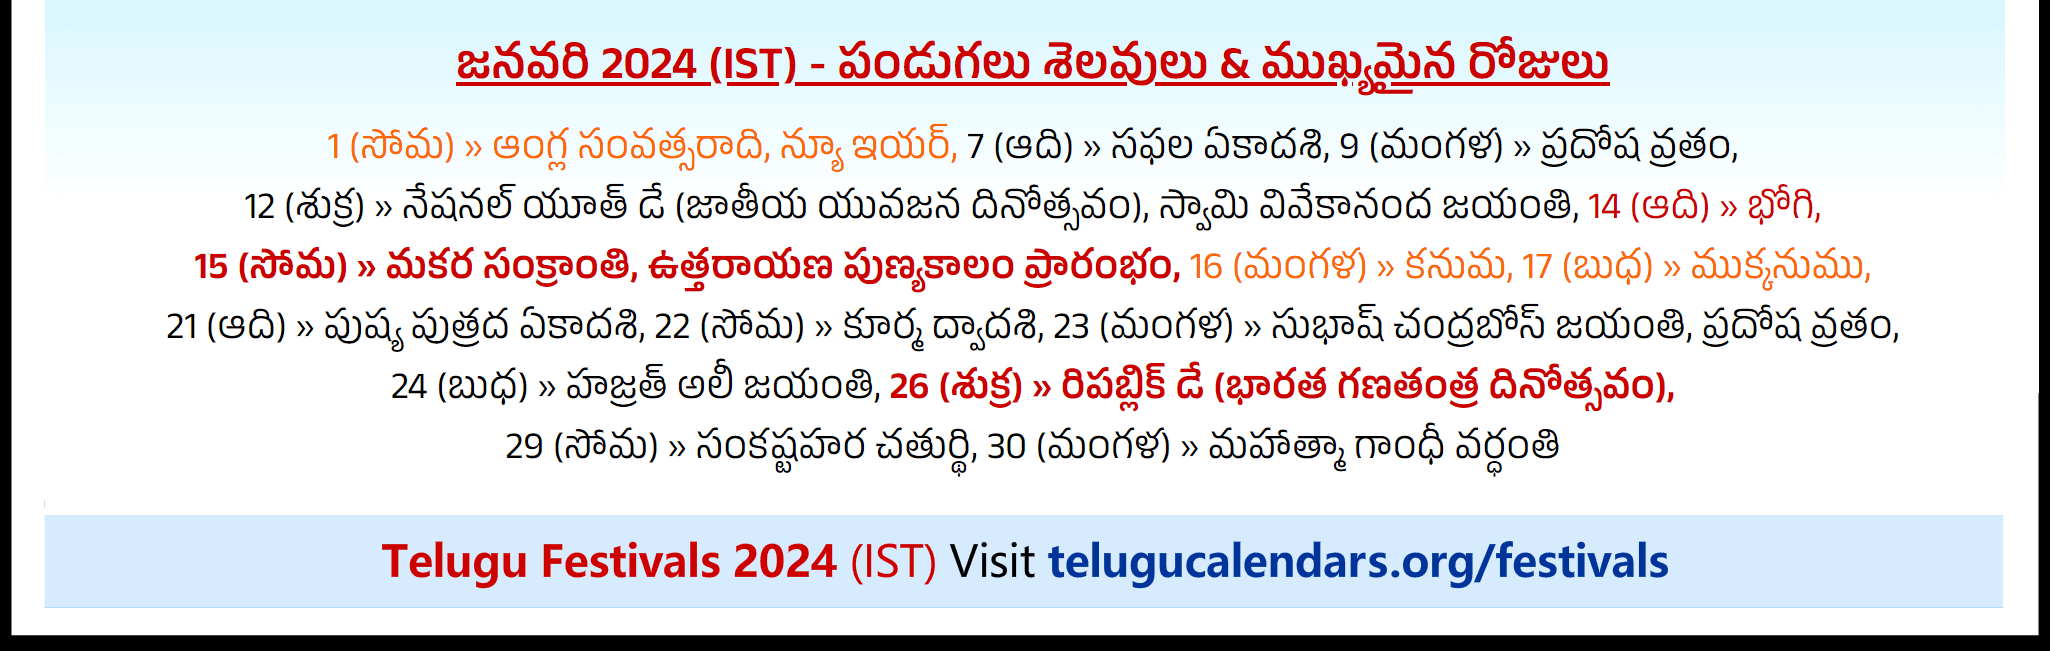 Telugu Festivals 2024 January Chicago